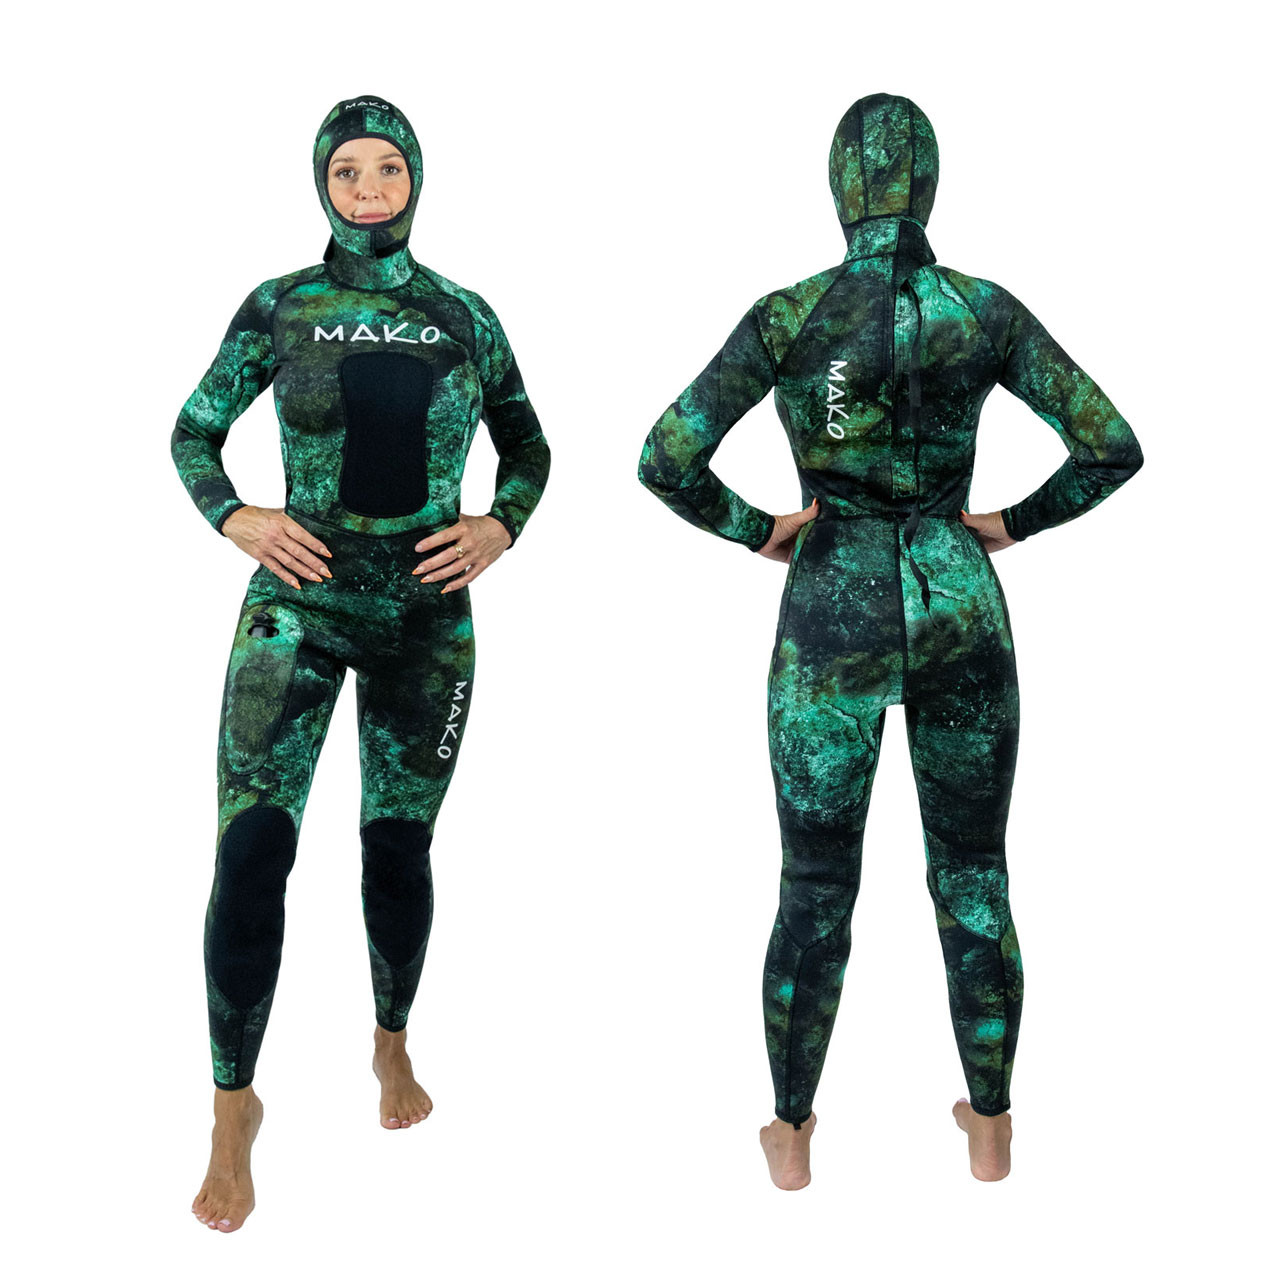 Wear Slinx Spearfishing Wetsuit 5mm Camo Scuba Wetsuits Spearfishing  Hunting Suit Split Camouflage Wet Suit 3xl From Zcdsk, $107.5